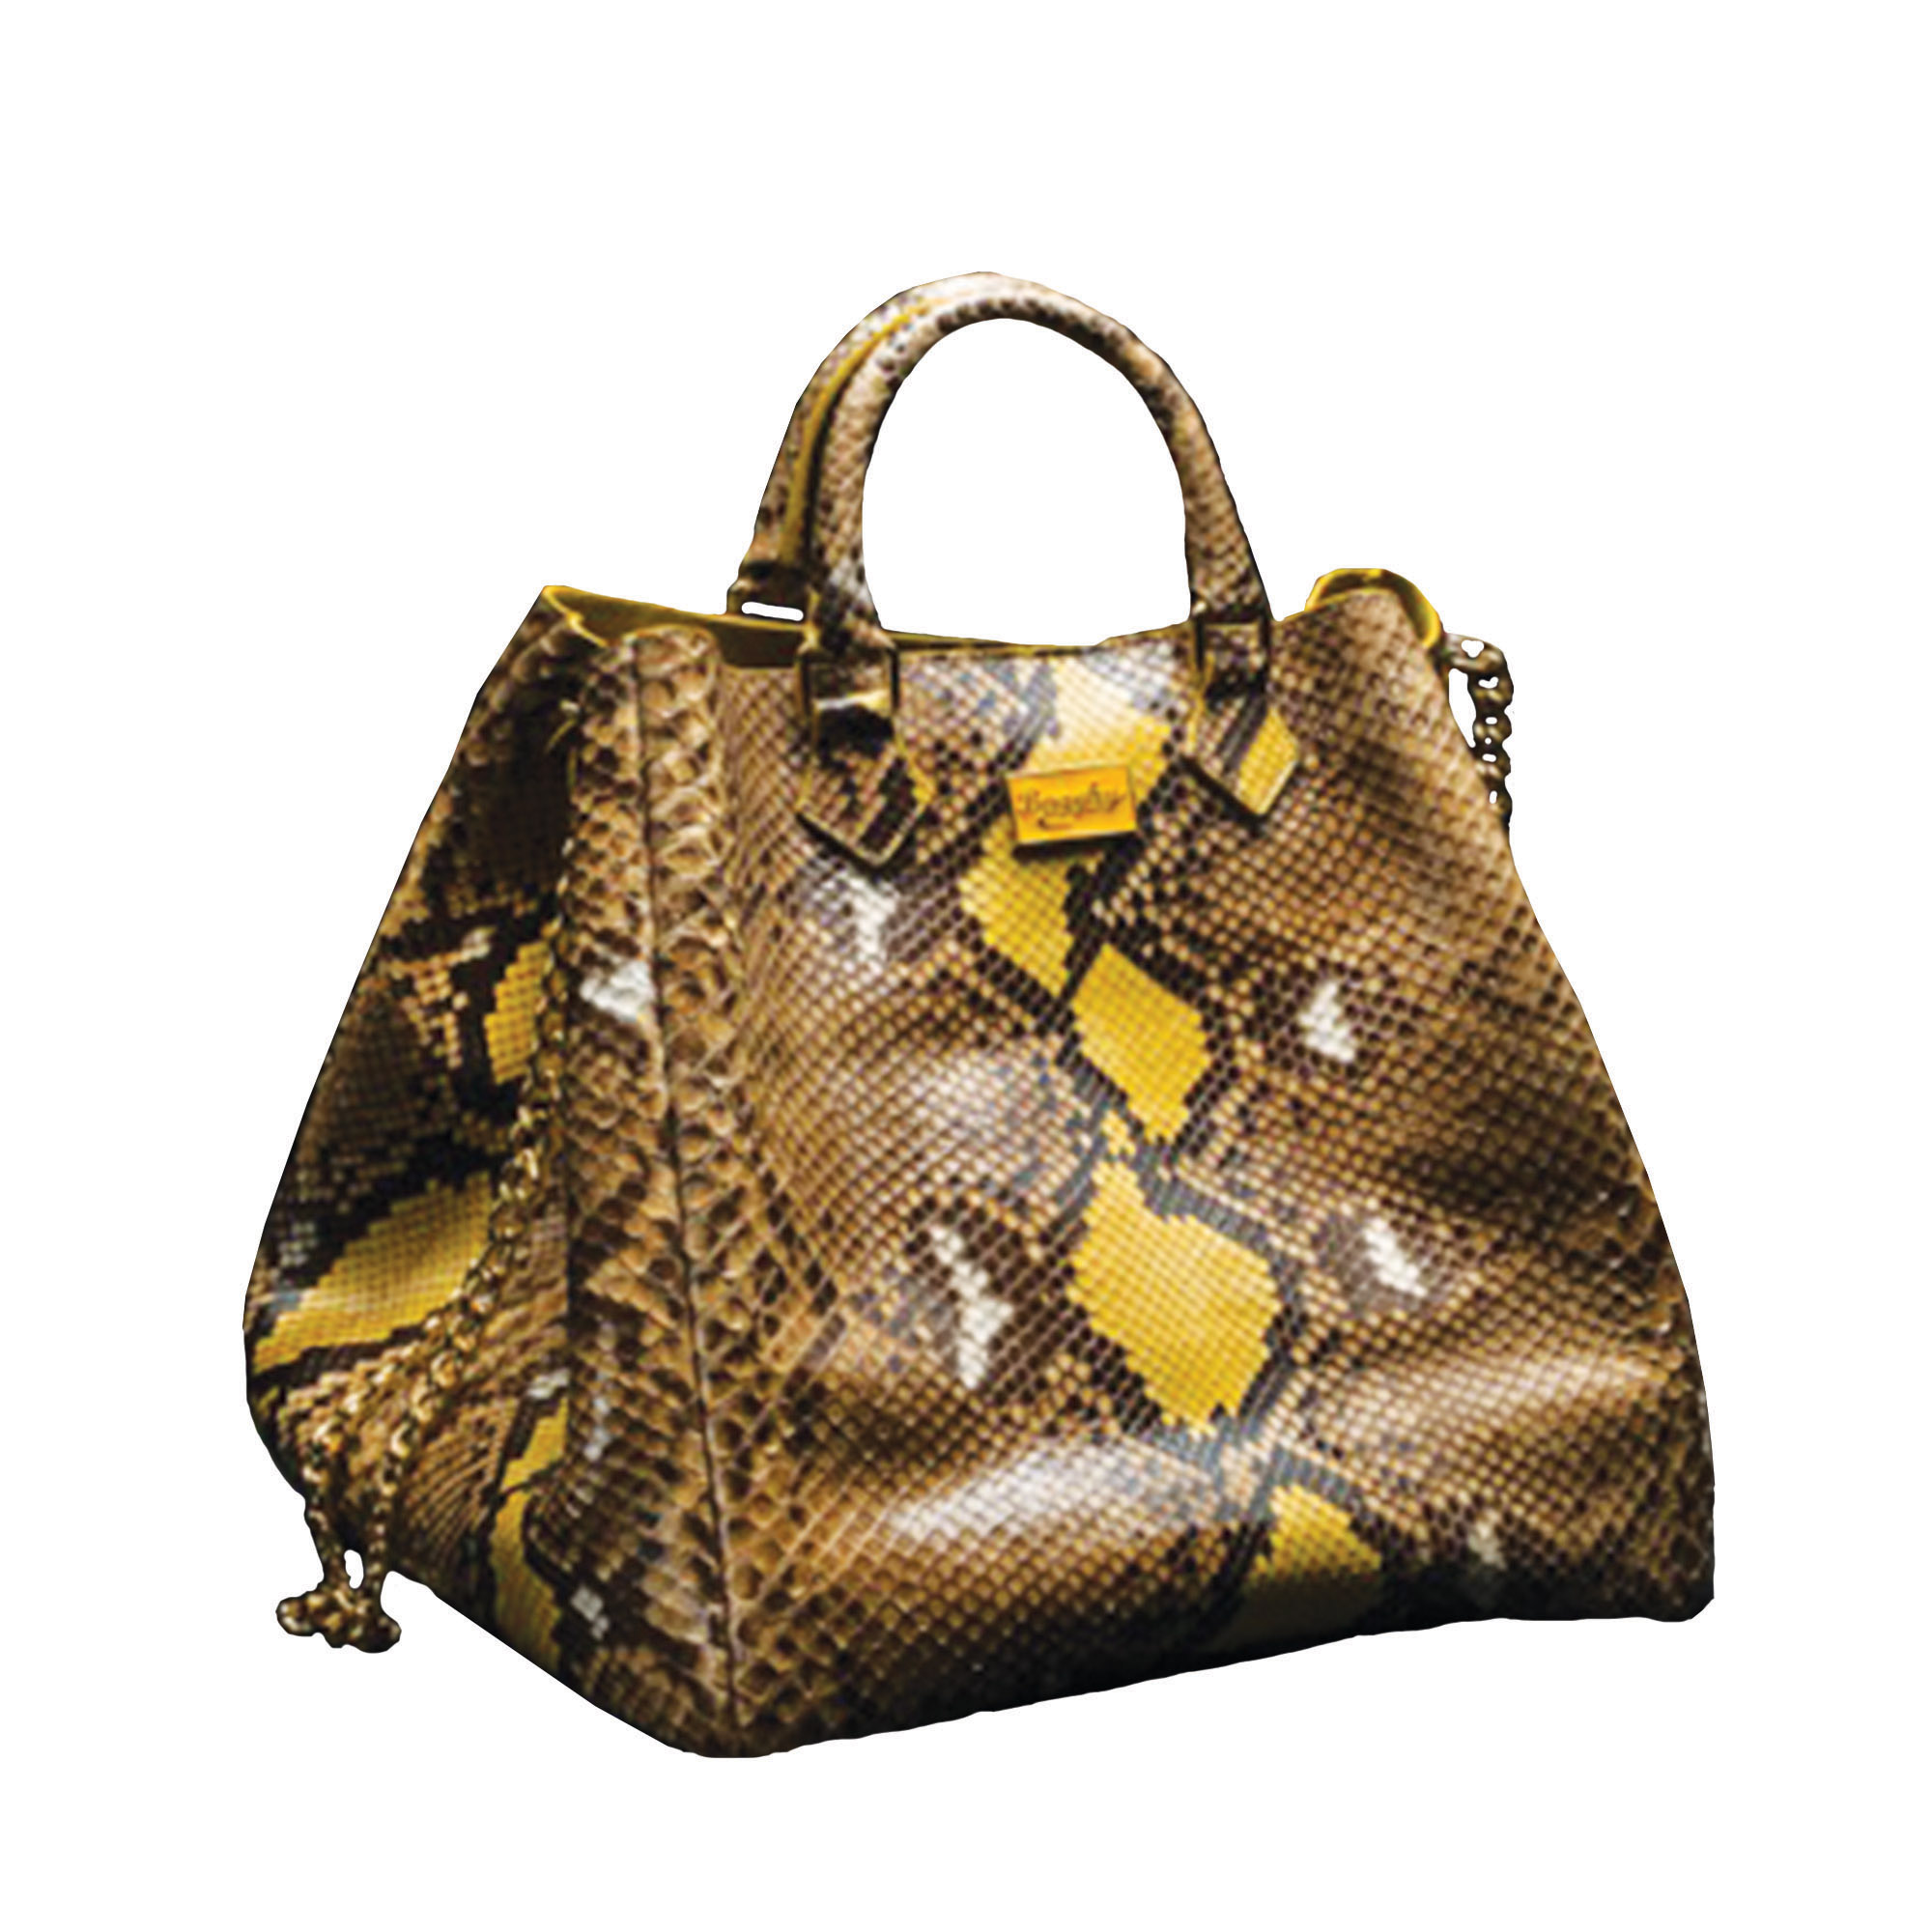 CLN - Golden hour goodness. ✨ Shop the Nataly Shoulder Bag